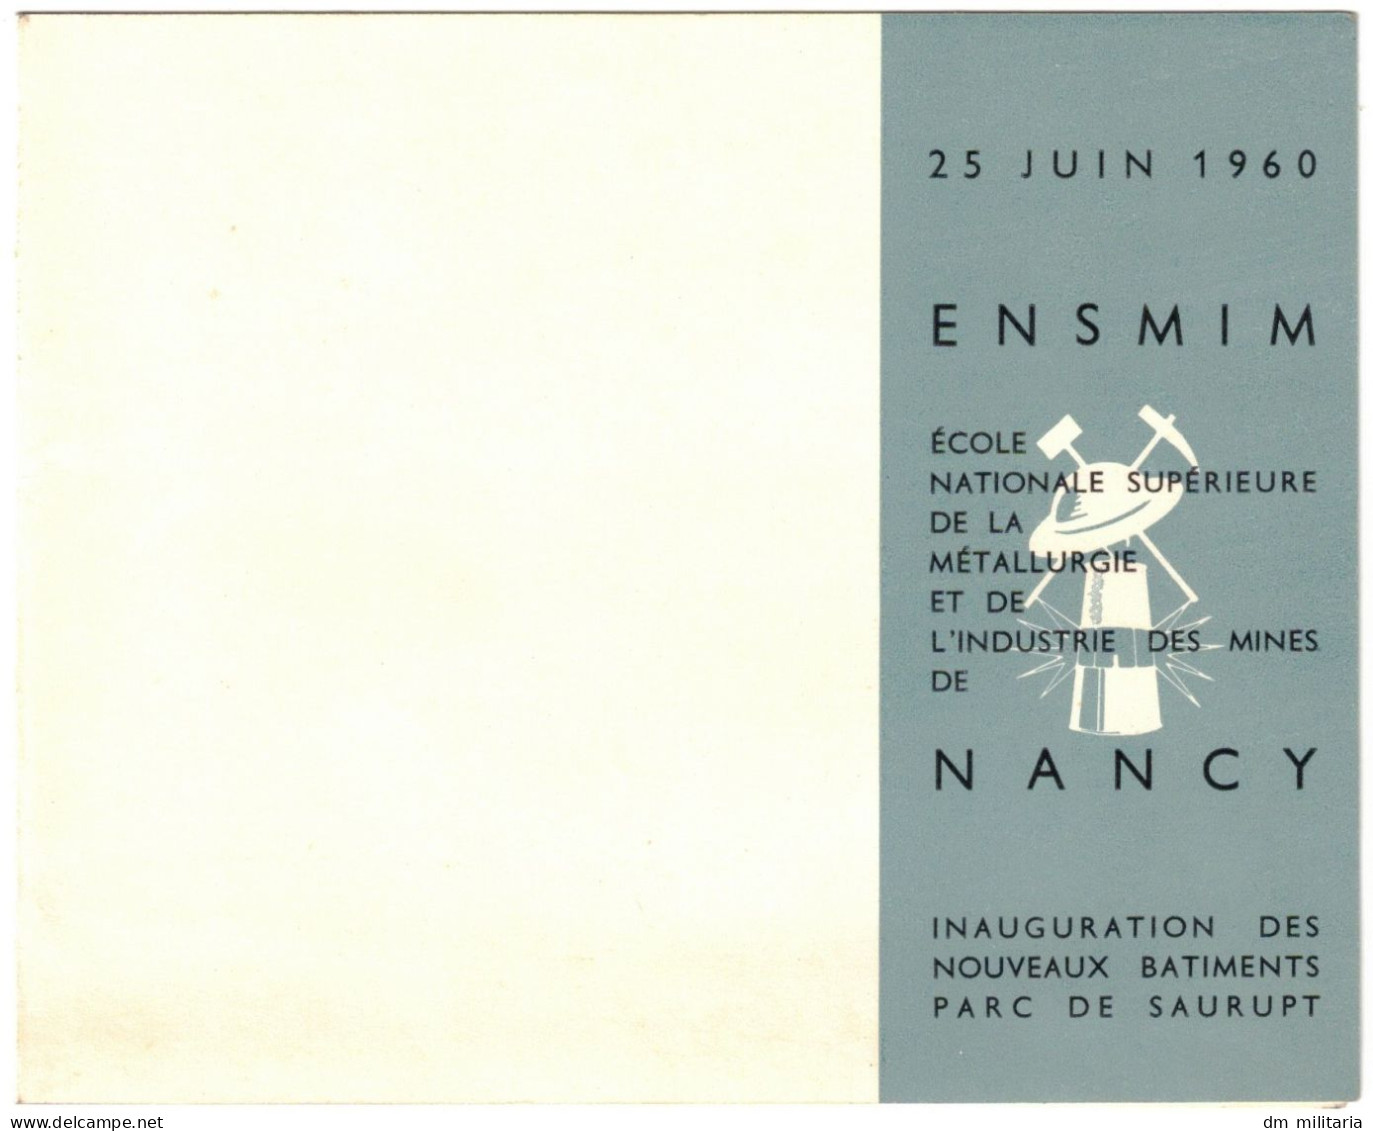 54 - CARTE D'INVITATION 1960 : ENSMIM ÉCOLE NATIONALE SUPÉRIEURE DE LA MÉTALLURGIE ET DE L'INDUSTRIE DES MINES DE NANCY - Non Classés